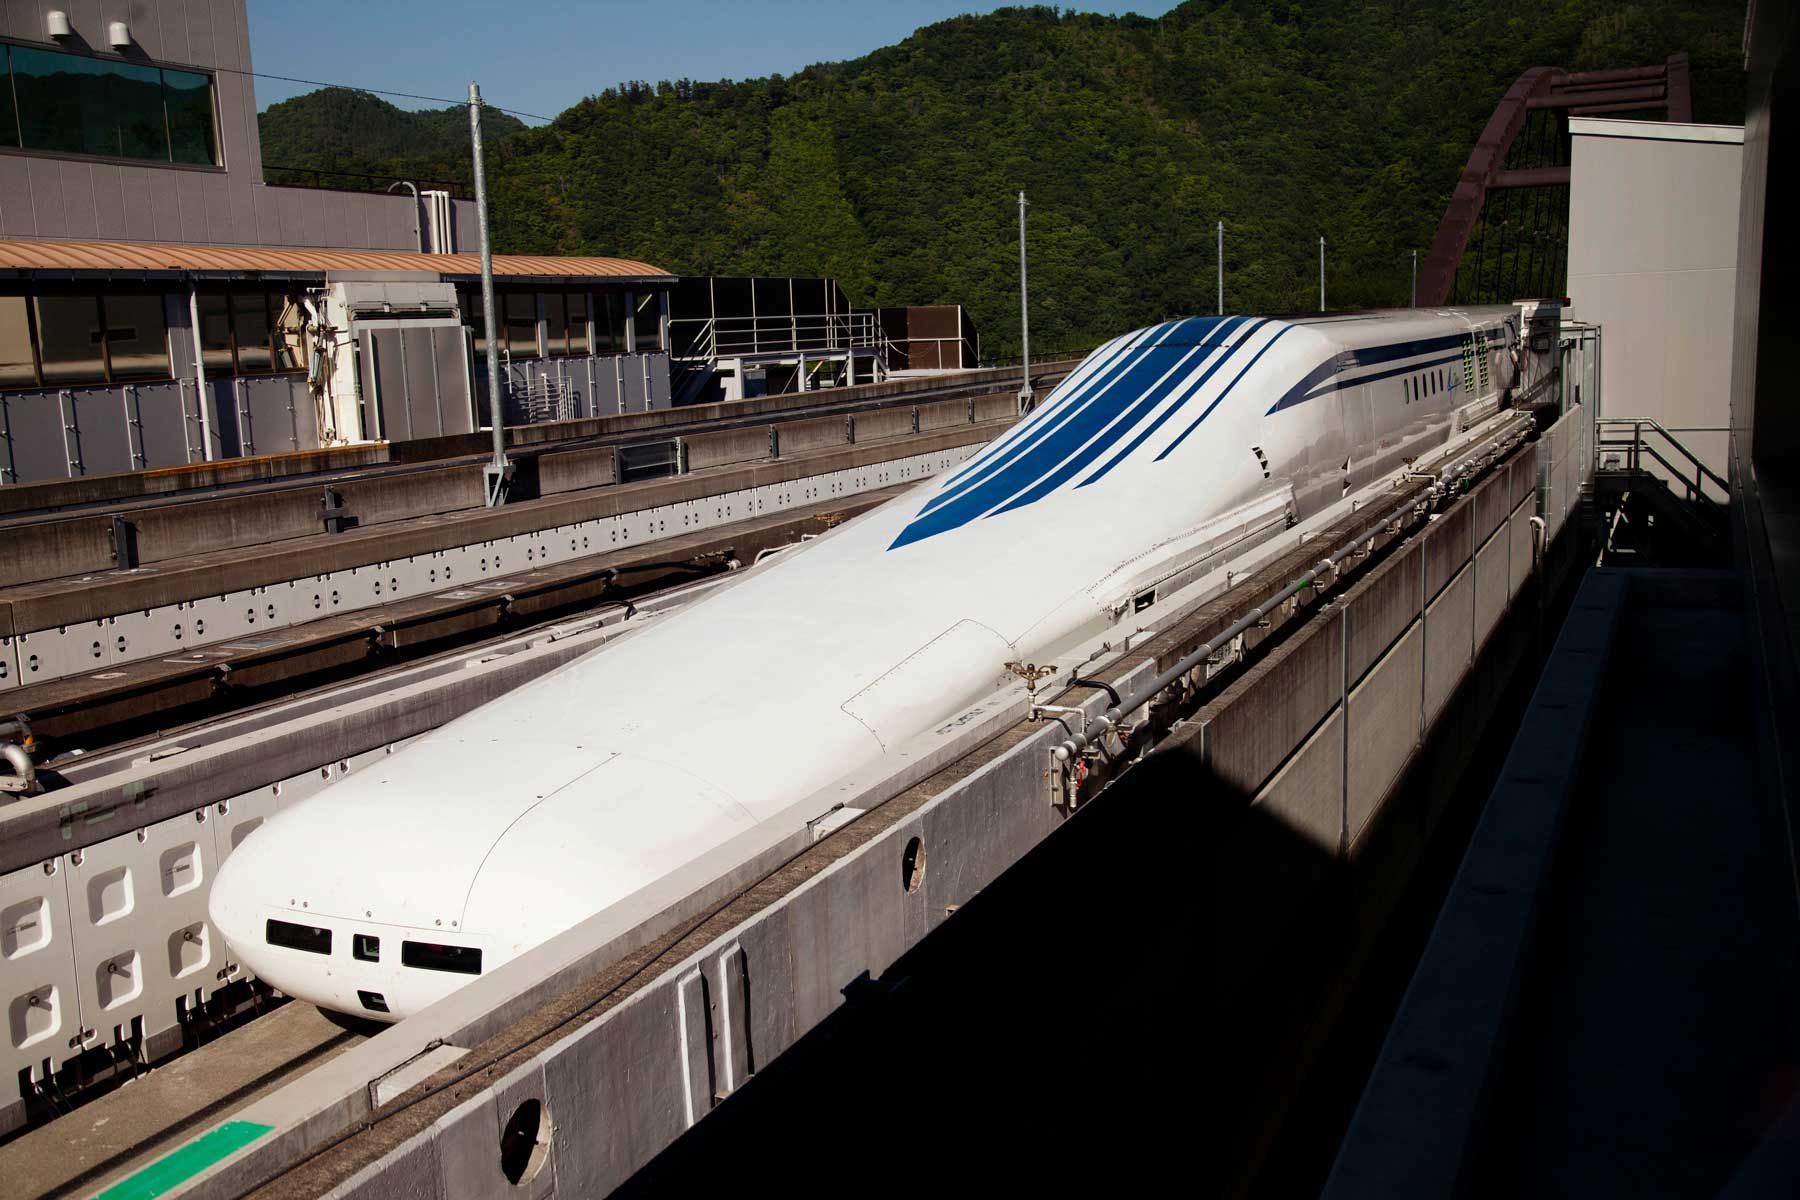 Die Magnetschwebebahn der Serie L0, die von der Central Japan Railway auf der Yamanashi Magnetschwebebahn Teststrecke getestet wird.